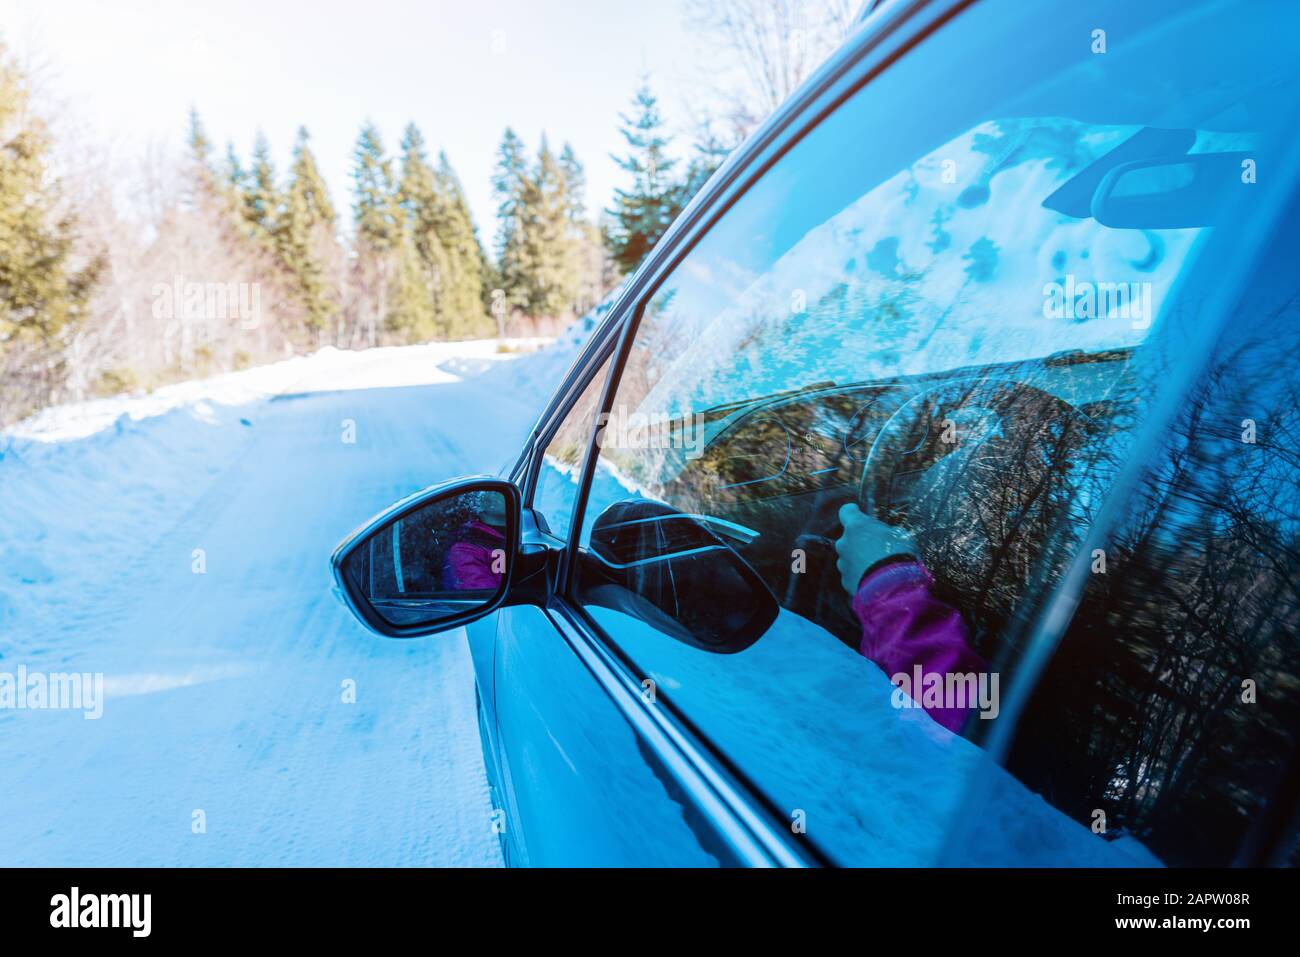 Vista dello specchietto retrovisore di un'auto in movimento su una superficie innevata invernale. Concetto di guida sicura in condizioni invernali Foto Stock